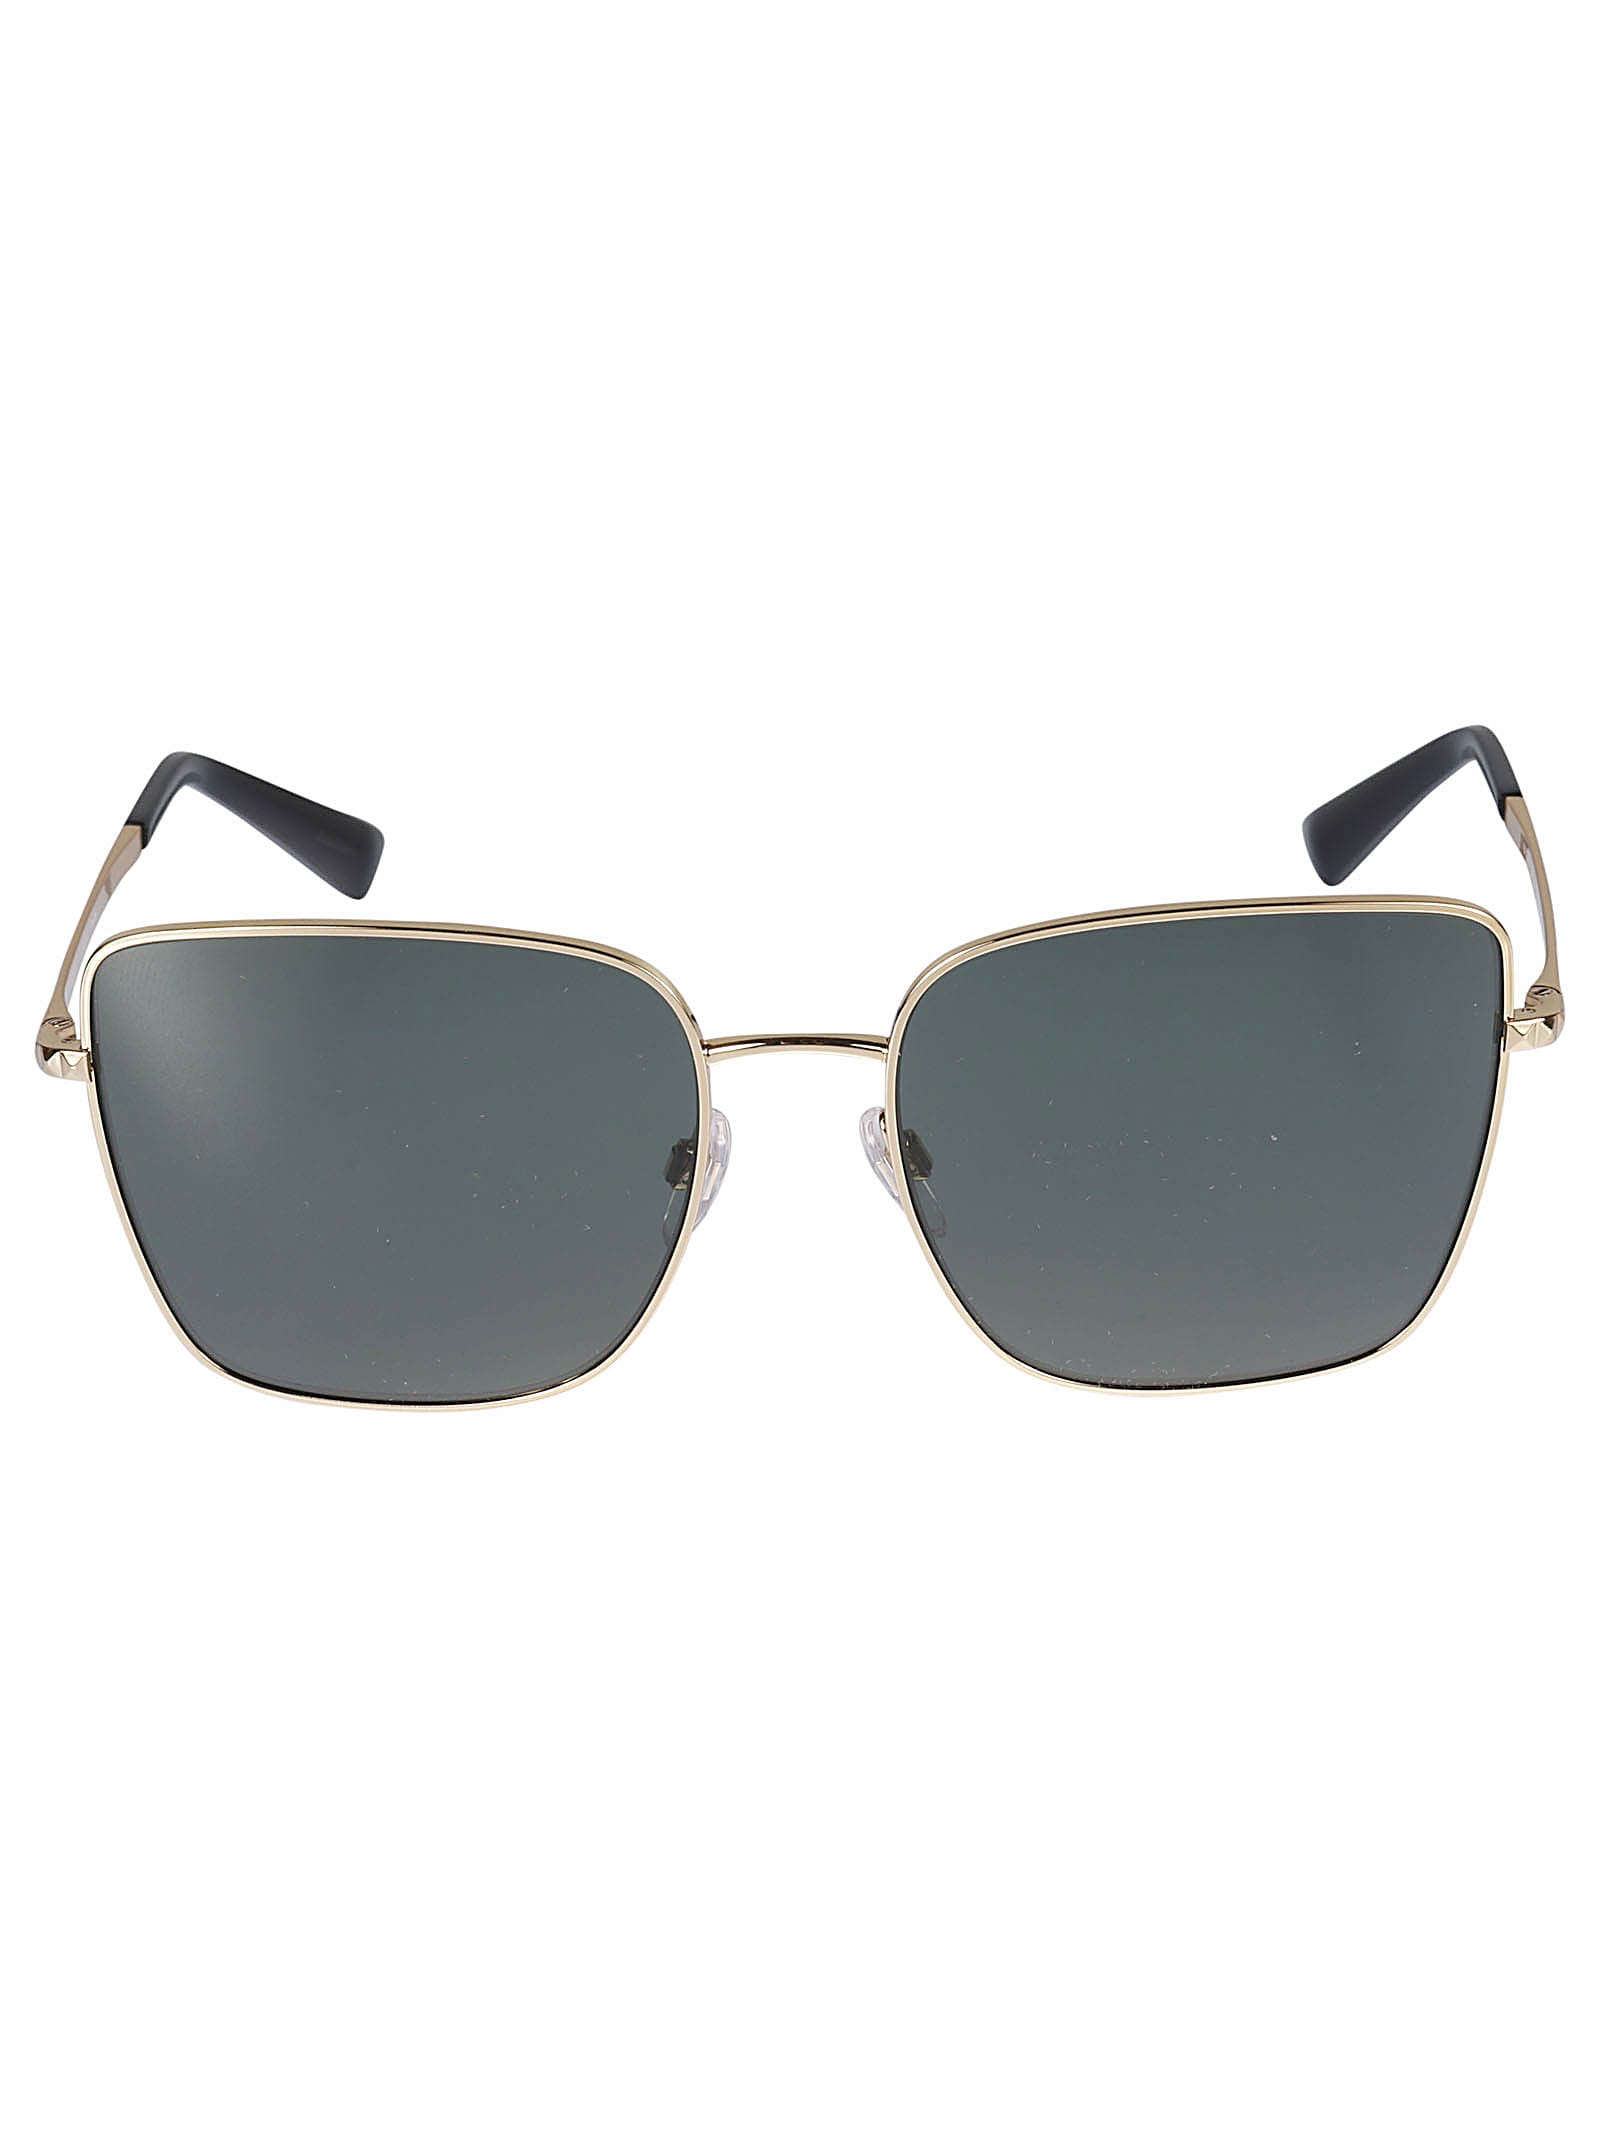 Valentino Sole300271 Sunglasses